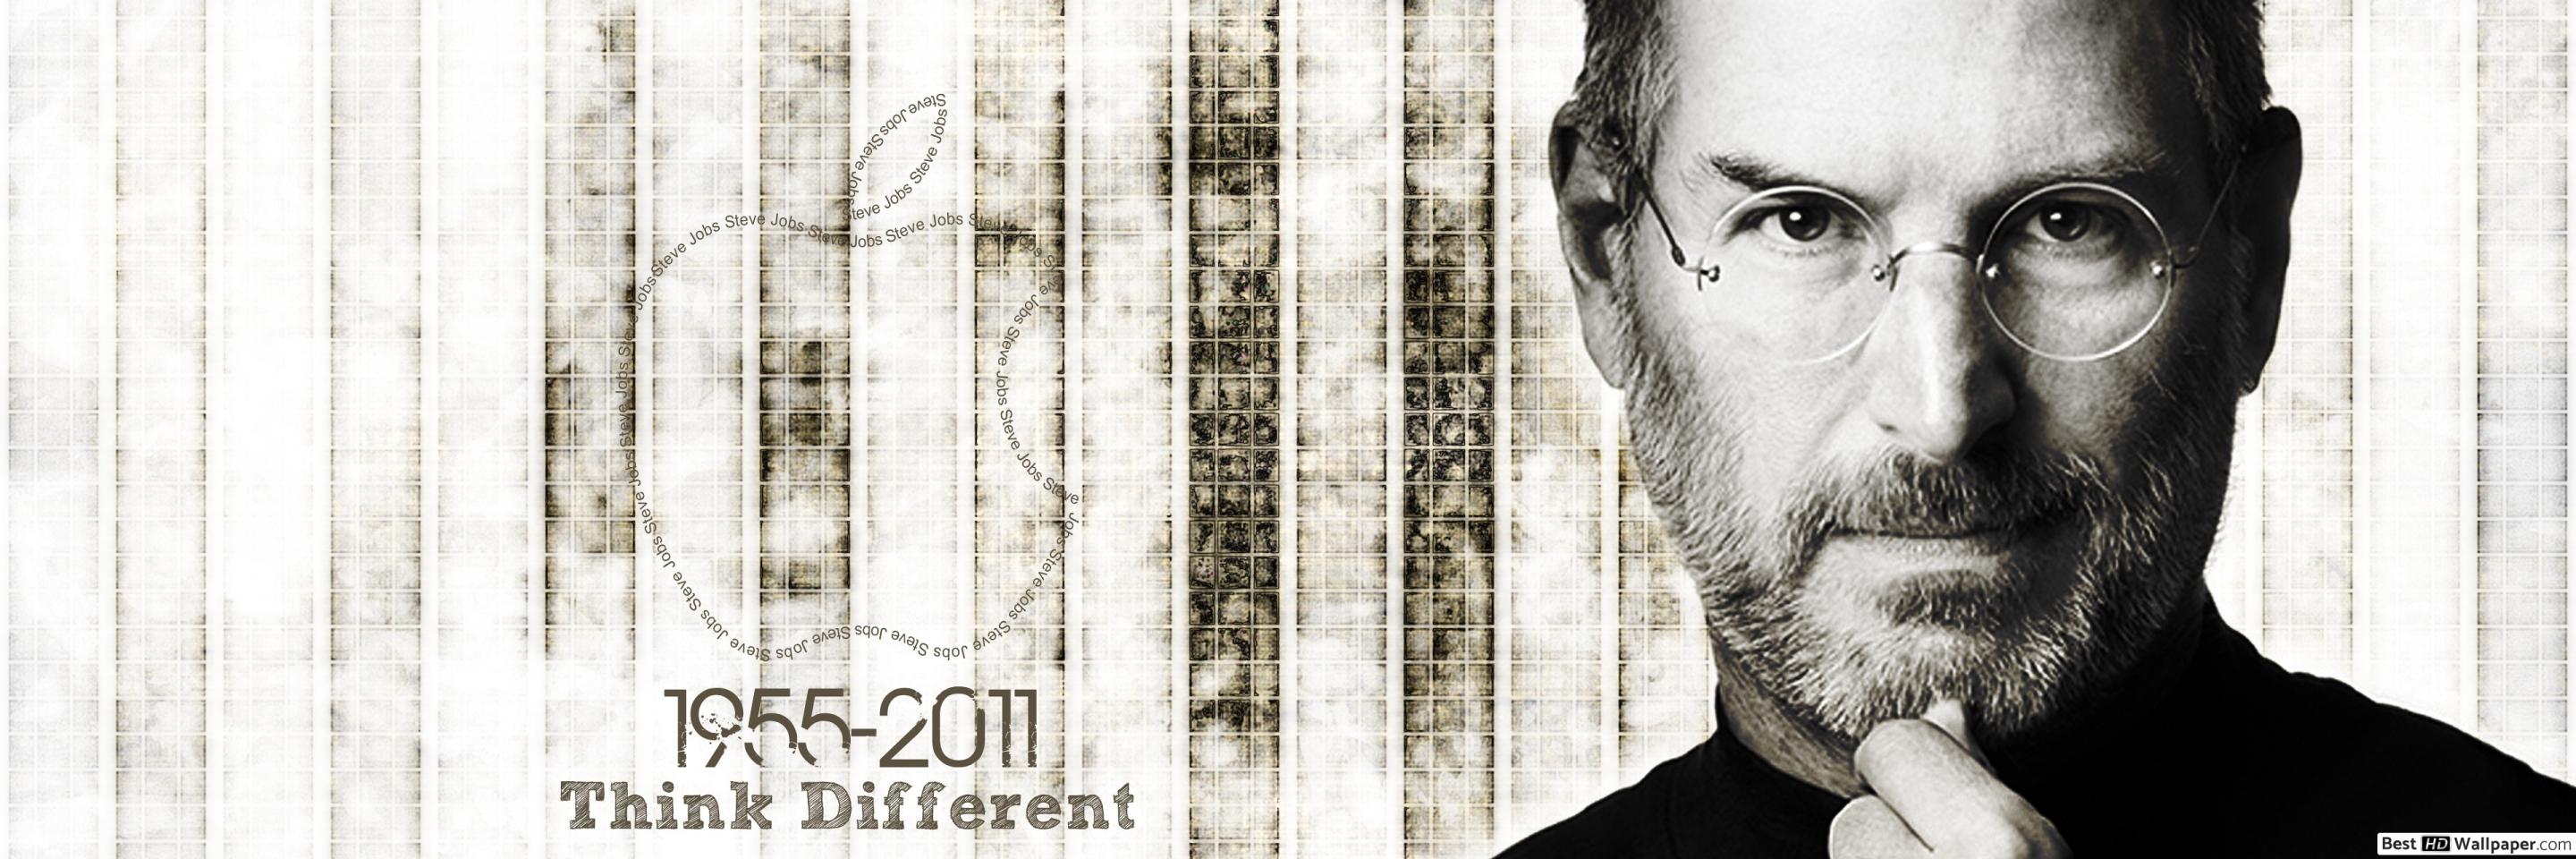 Semen Retention Steve Jobs , HD Wallpaper & Backgrounds